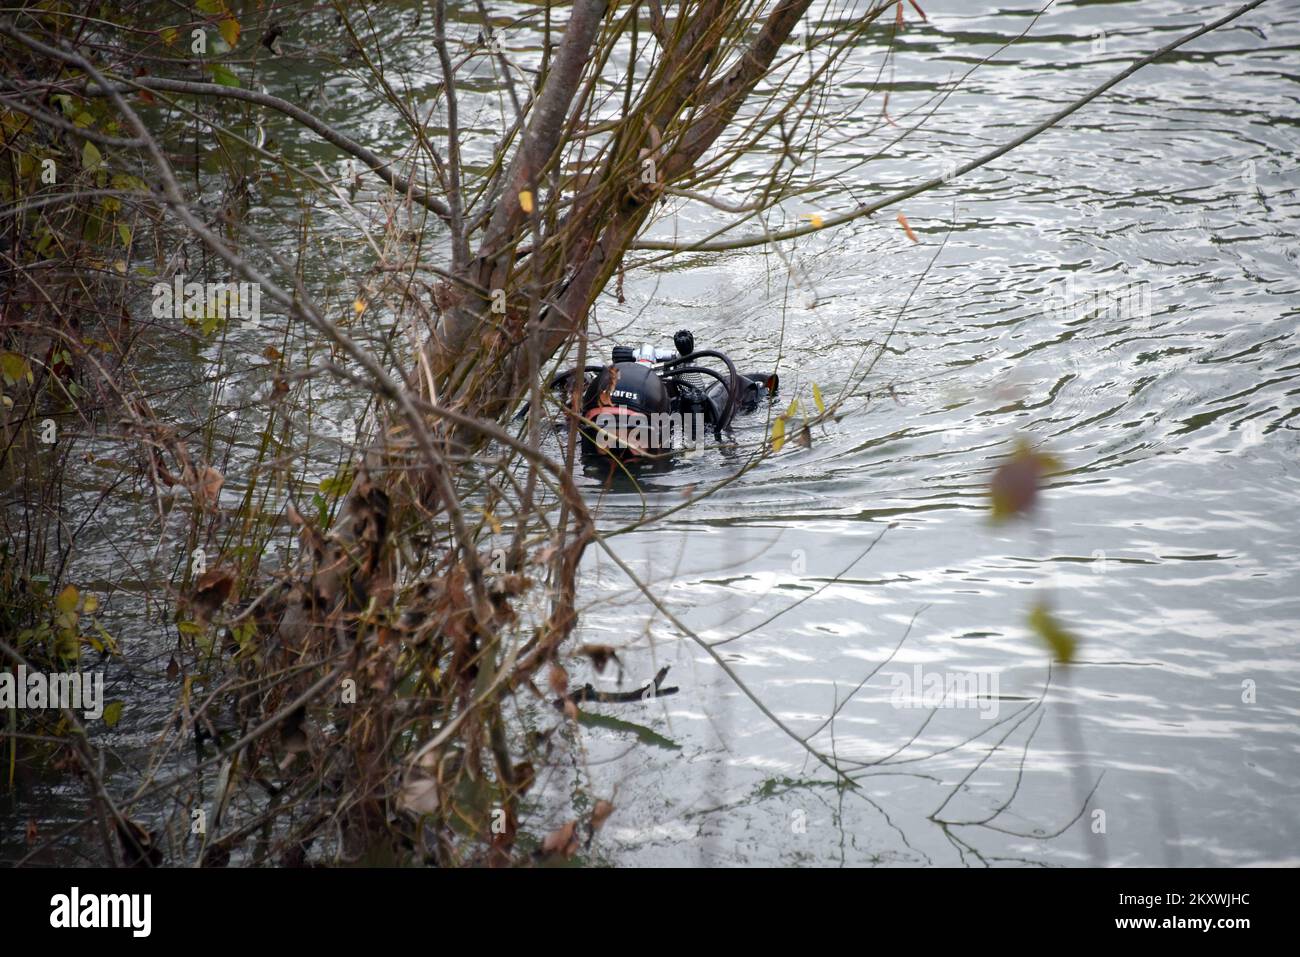 Une recherche est toujours en cours pour une jeune fille de 10 ans qui a disparu jeudi soir dans la rivière Dragonja gonflée alors qu'un groupe de migrants tentait de traverser la frontière croate-slovène.la police a déclaré qu'une turque, la mère de la fille disparue, avait été sauvée de la rivière. Ils ont ajouté qu'un document qu'ils avaient trouvé indiquait que l'enfant était handicapé.environ 40 policiers et plongeurs croates ont été rejoints par des plongeurs slovènes à la recherche de la fille disparue.le chef de police de la ville d'Istrie de Buje, Boban Robin Paulovic, a déclaré que les pompiers croates et slovènes Banque D'Images